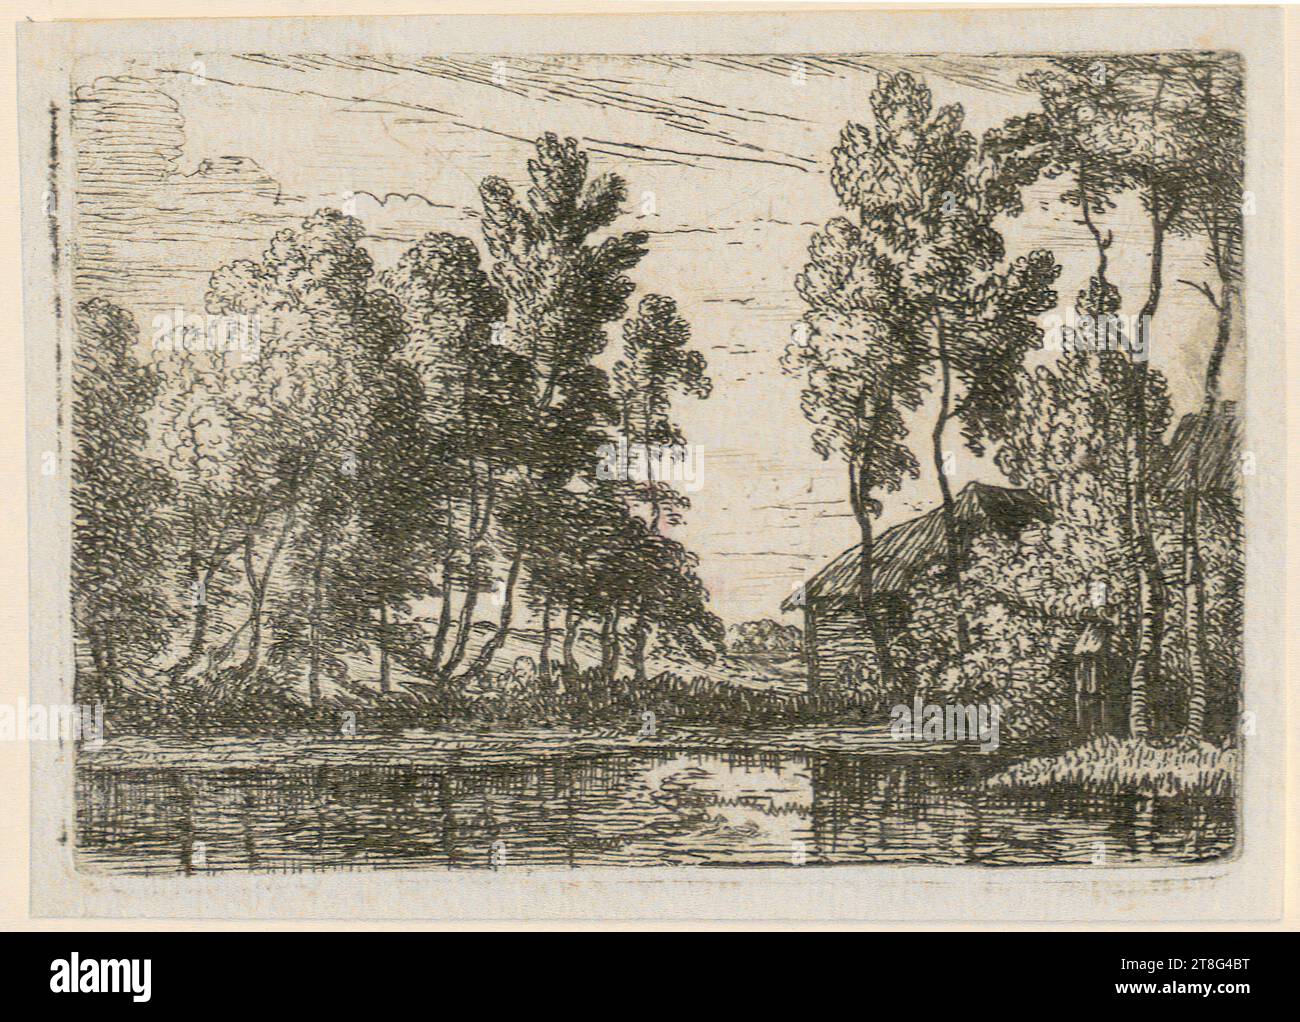 Lodewyk de Vadder (1605 - 1655), Canal, feuille 4 de la série 'petits paysages', origine du support d'impression : c. 1620 - 1655, gravure, taille de la feuille : 7,7 x 10,9 cm, verso en bas à gauche marque de marchand avec blesitift '21244, C. Banque D'Images